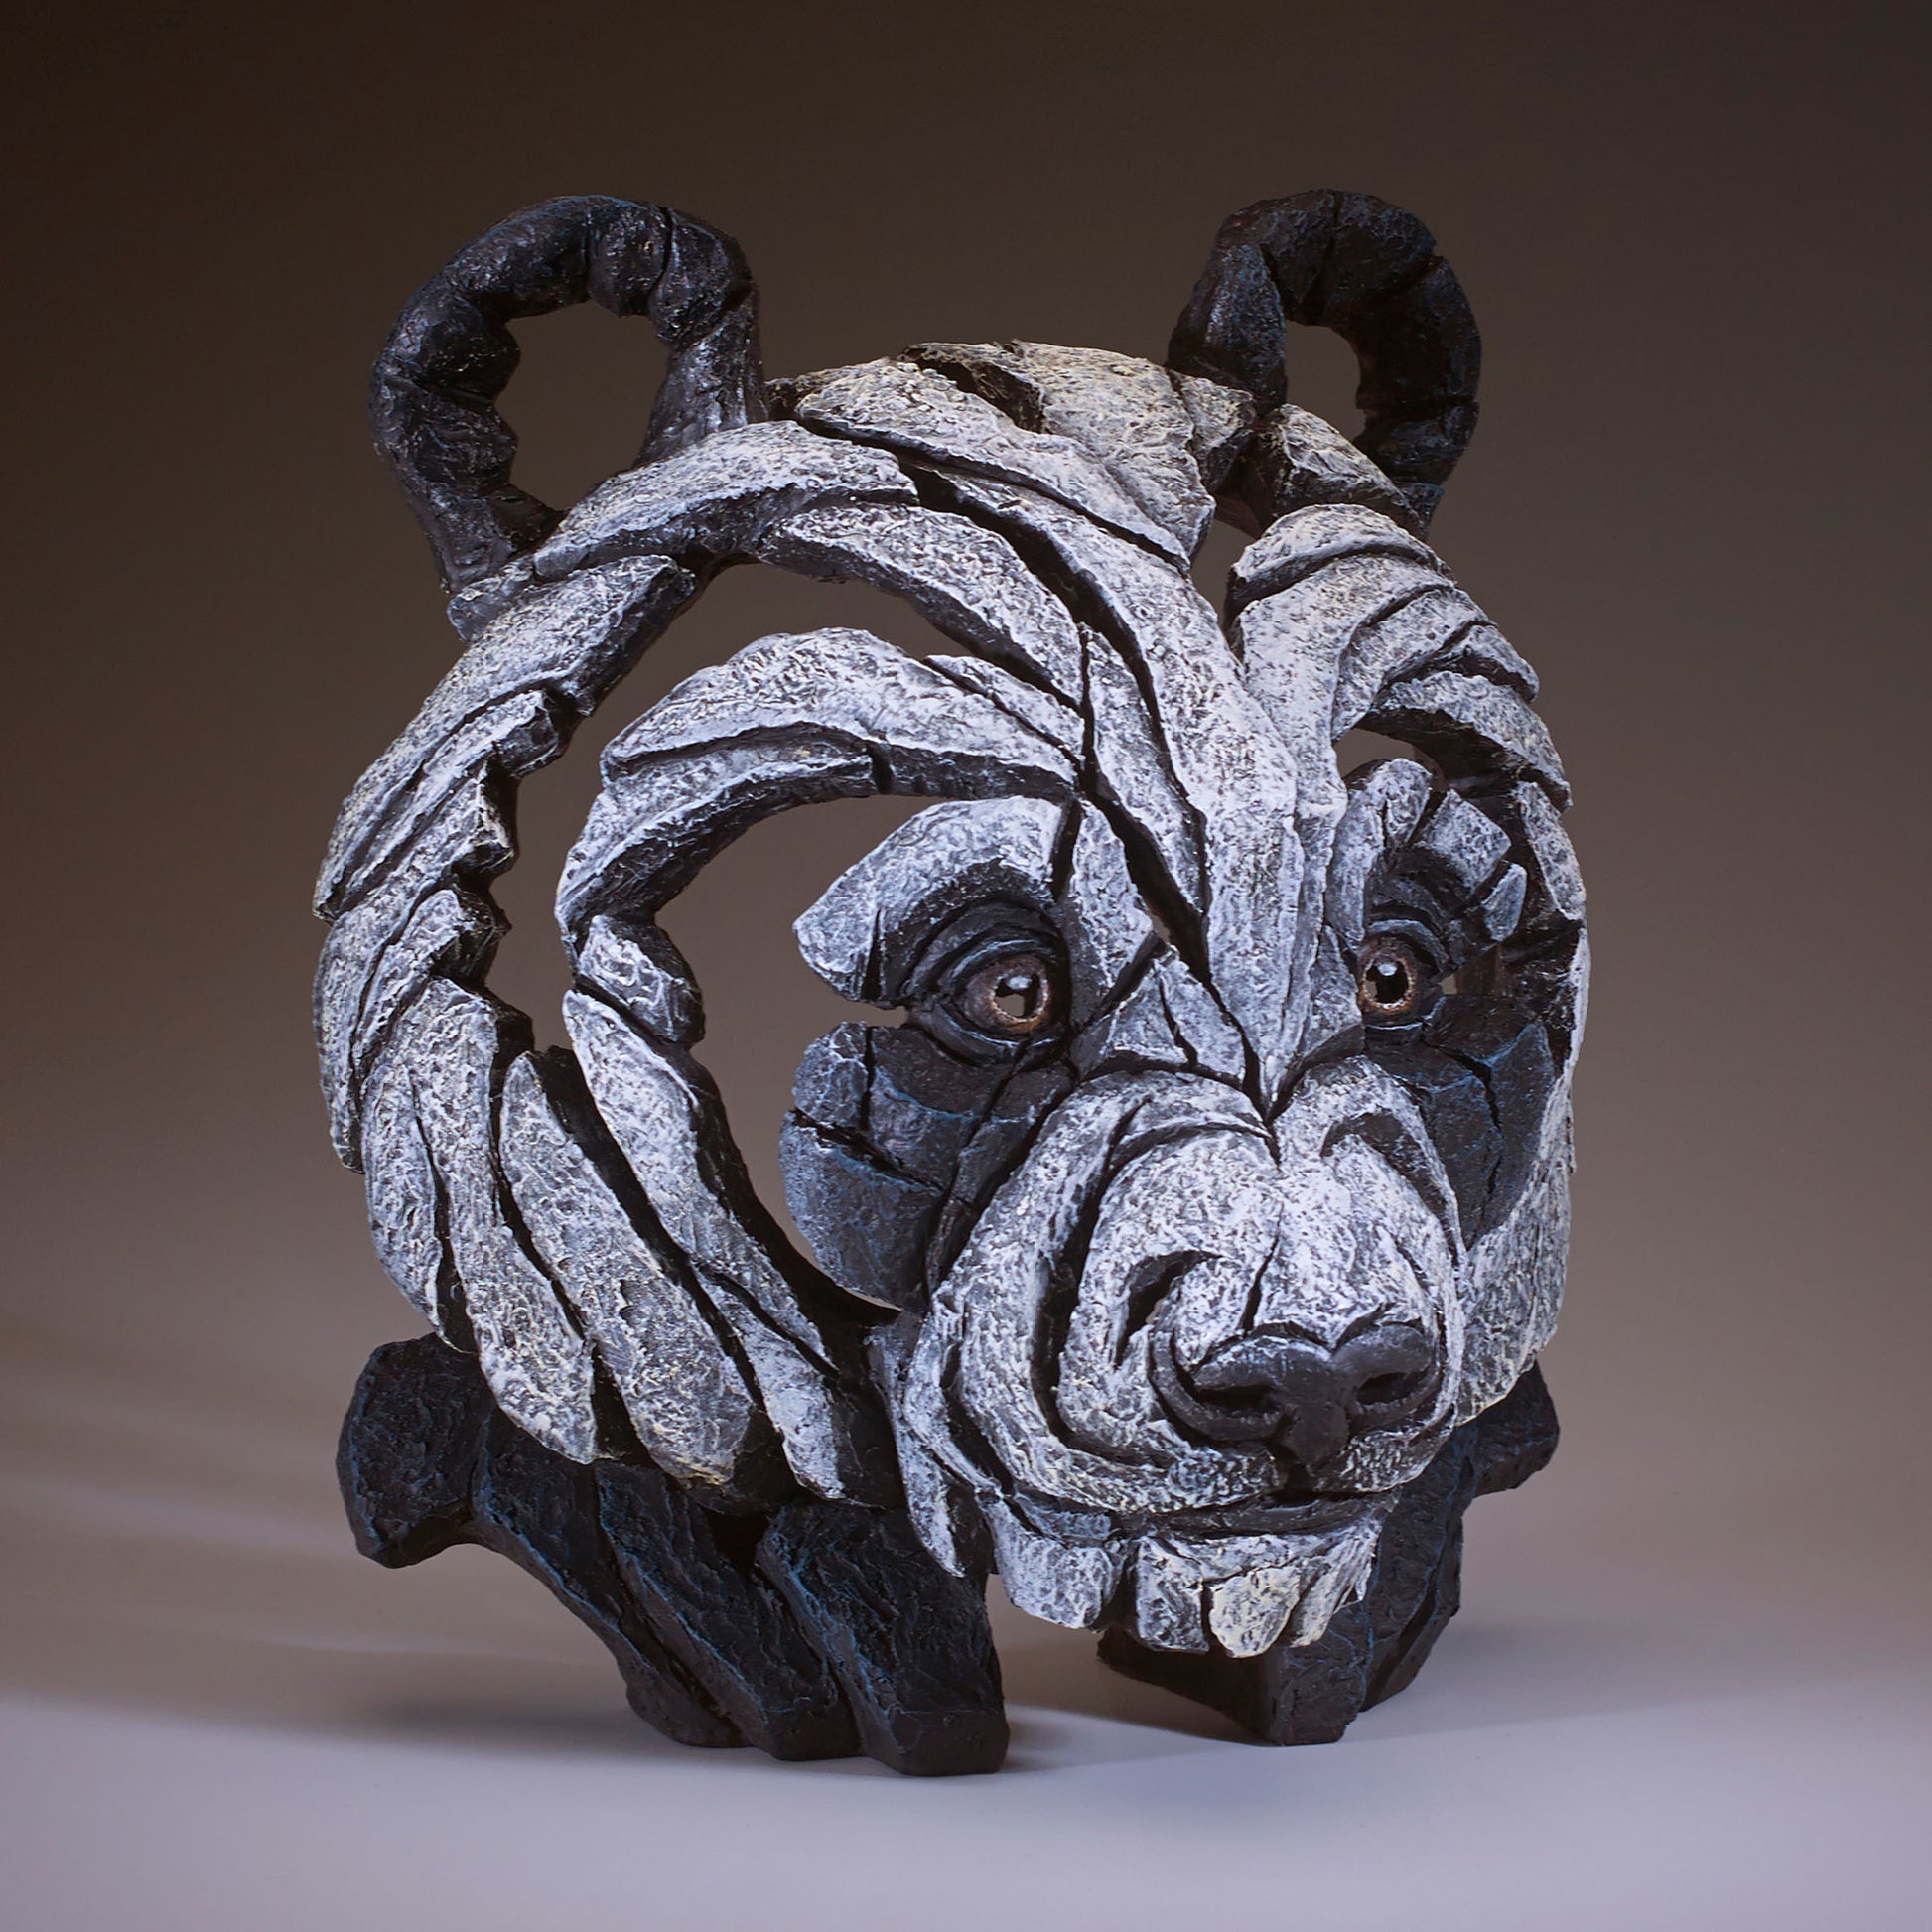 Panda Bust, Panda Bear Sculpture, Panda Head, Good Luck Gift, Edge Sculpture, Unique Gift